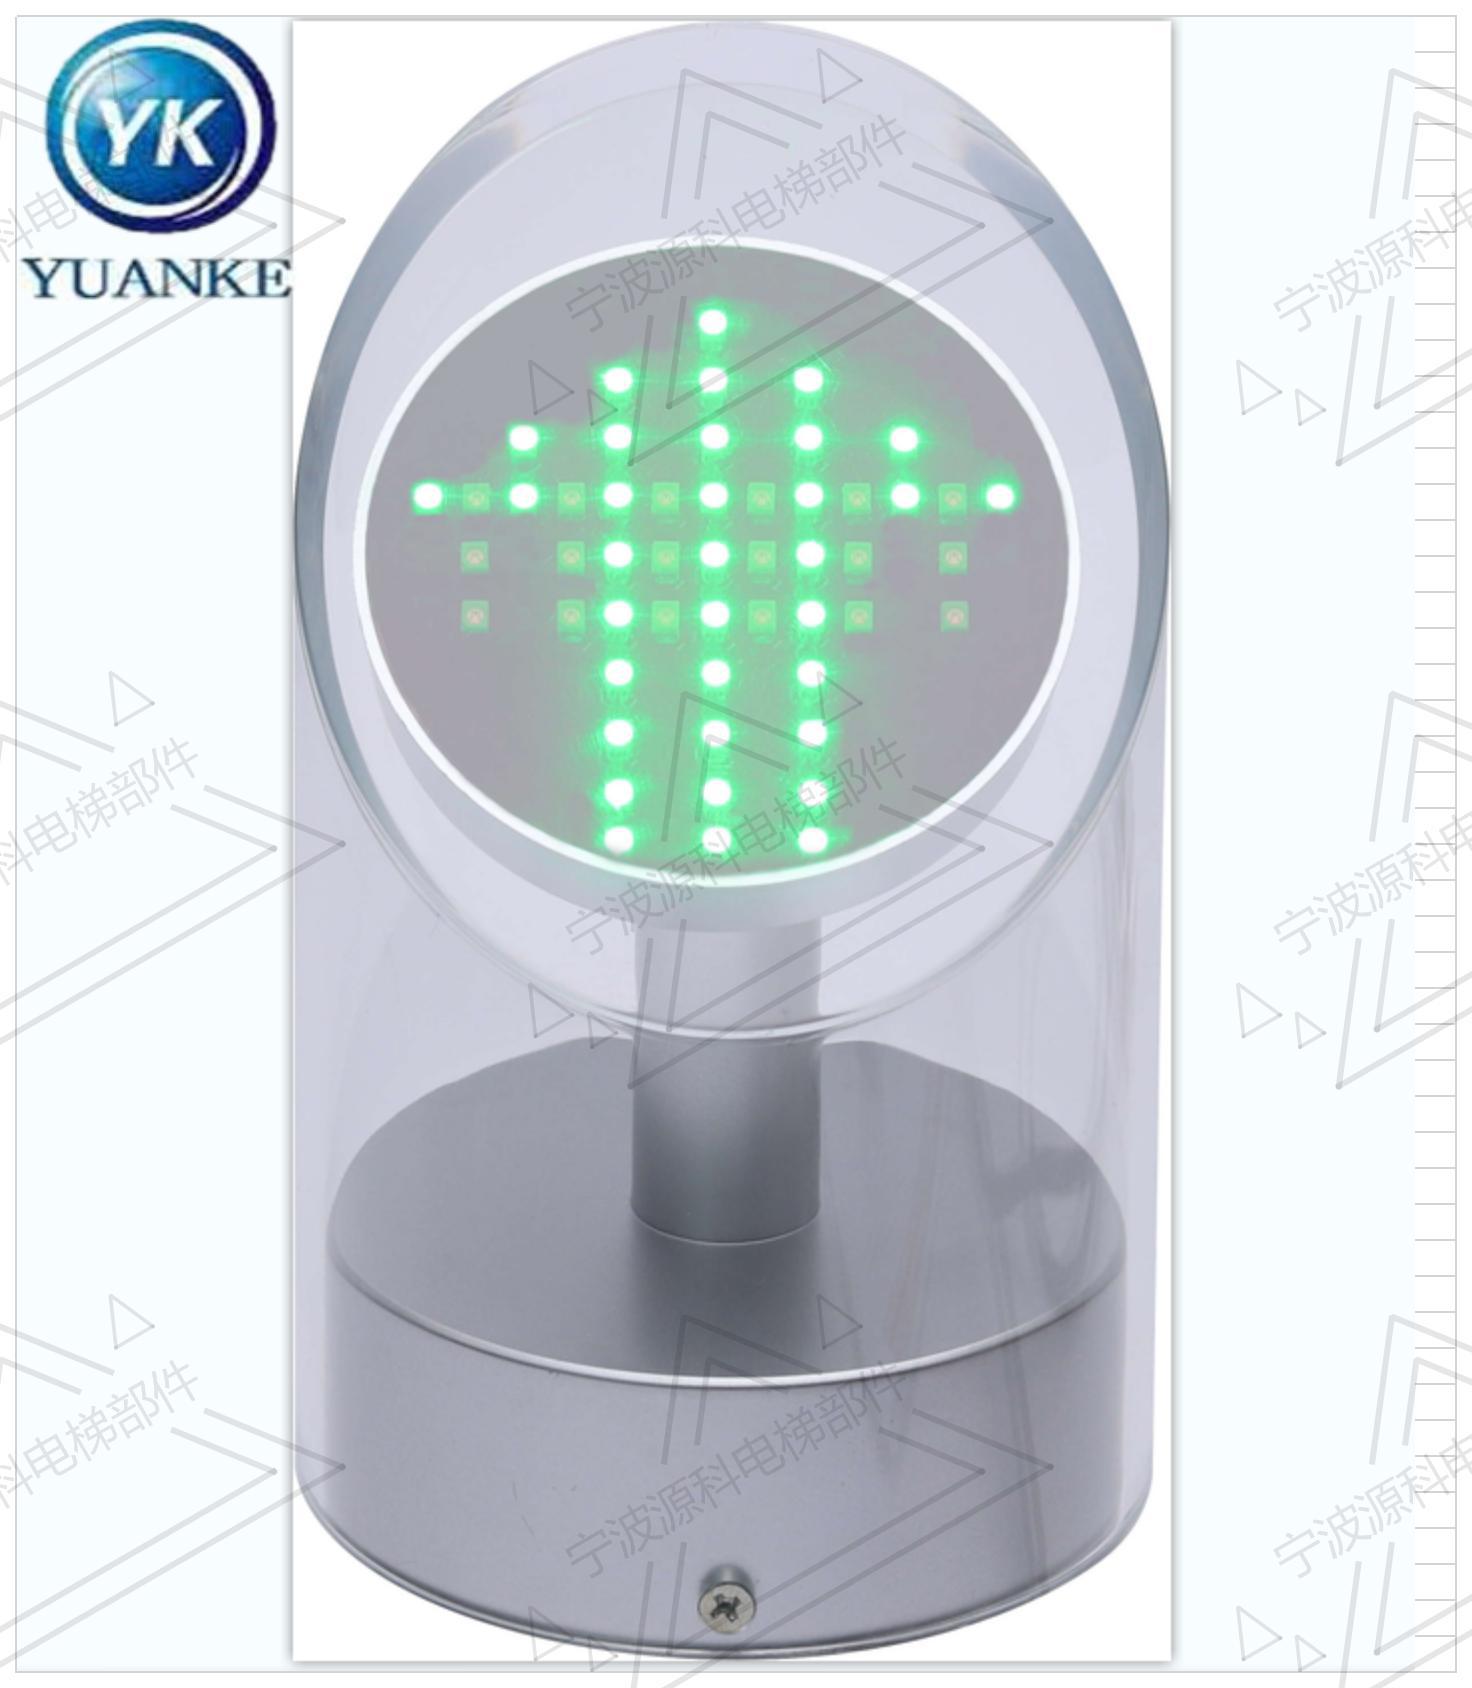 厂家供应扶梯指示灯 运行指示器 交通流量灯 信号灯  YK-LED-02